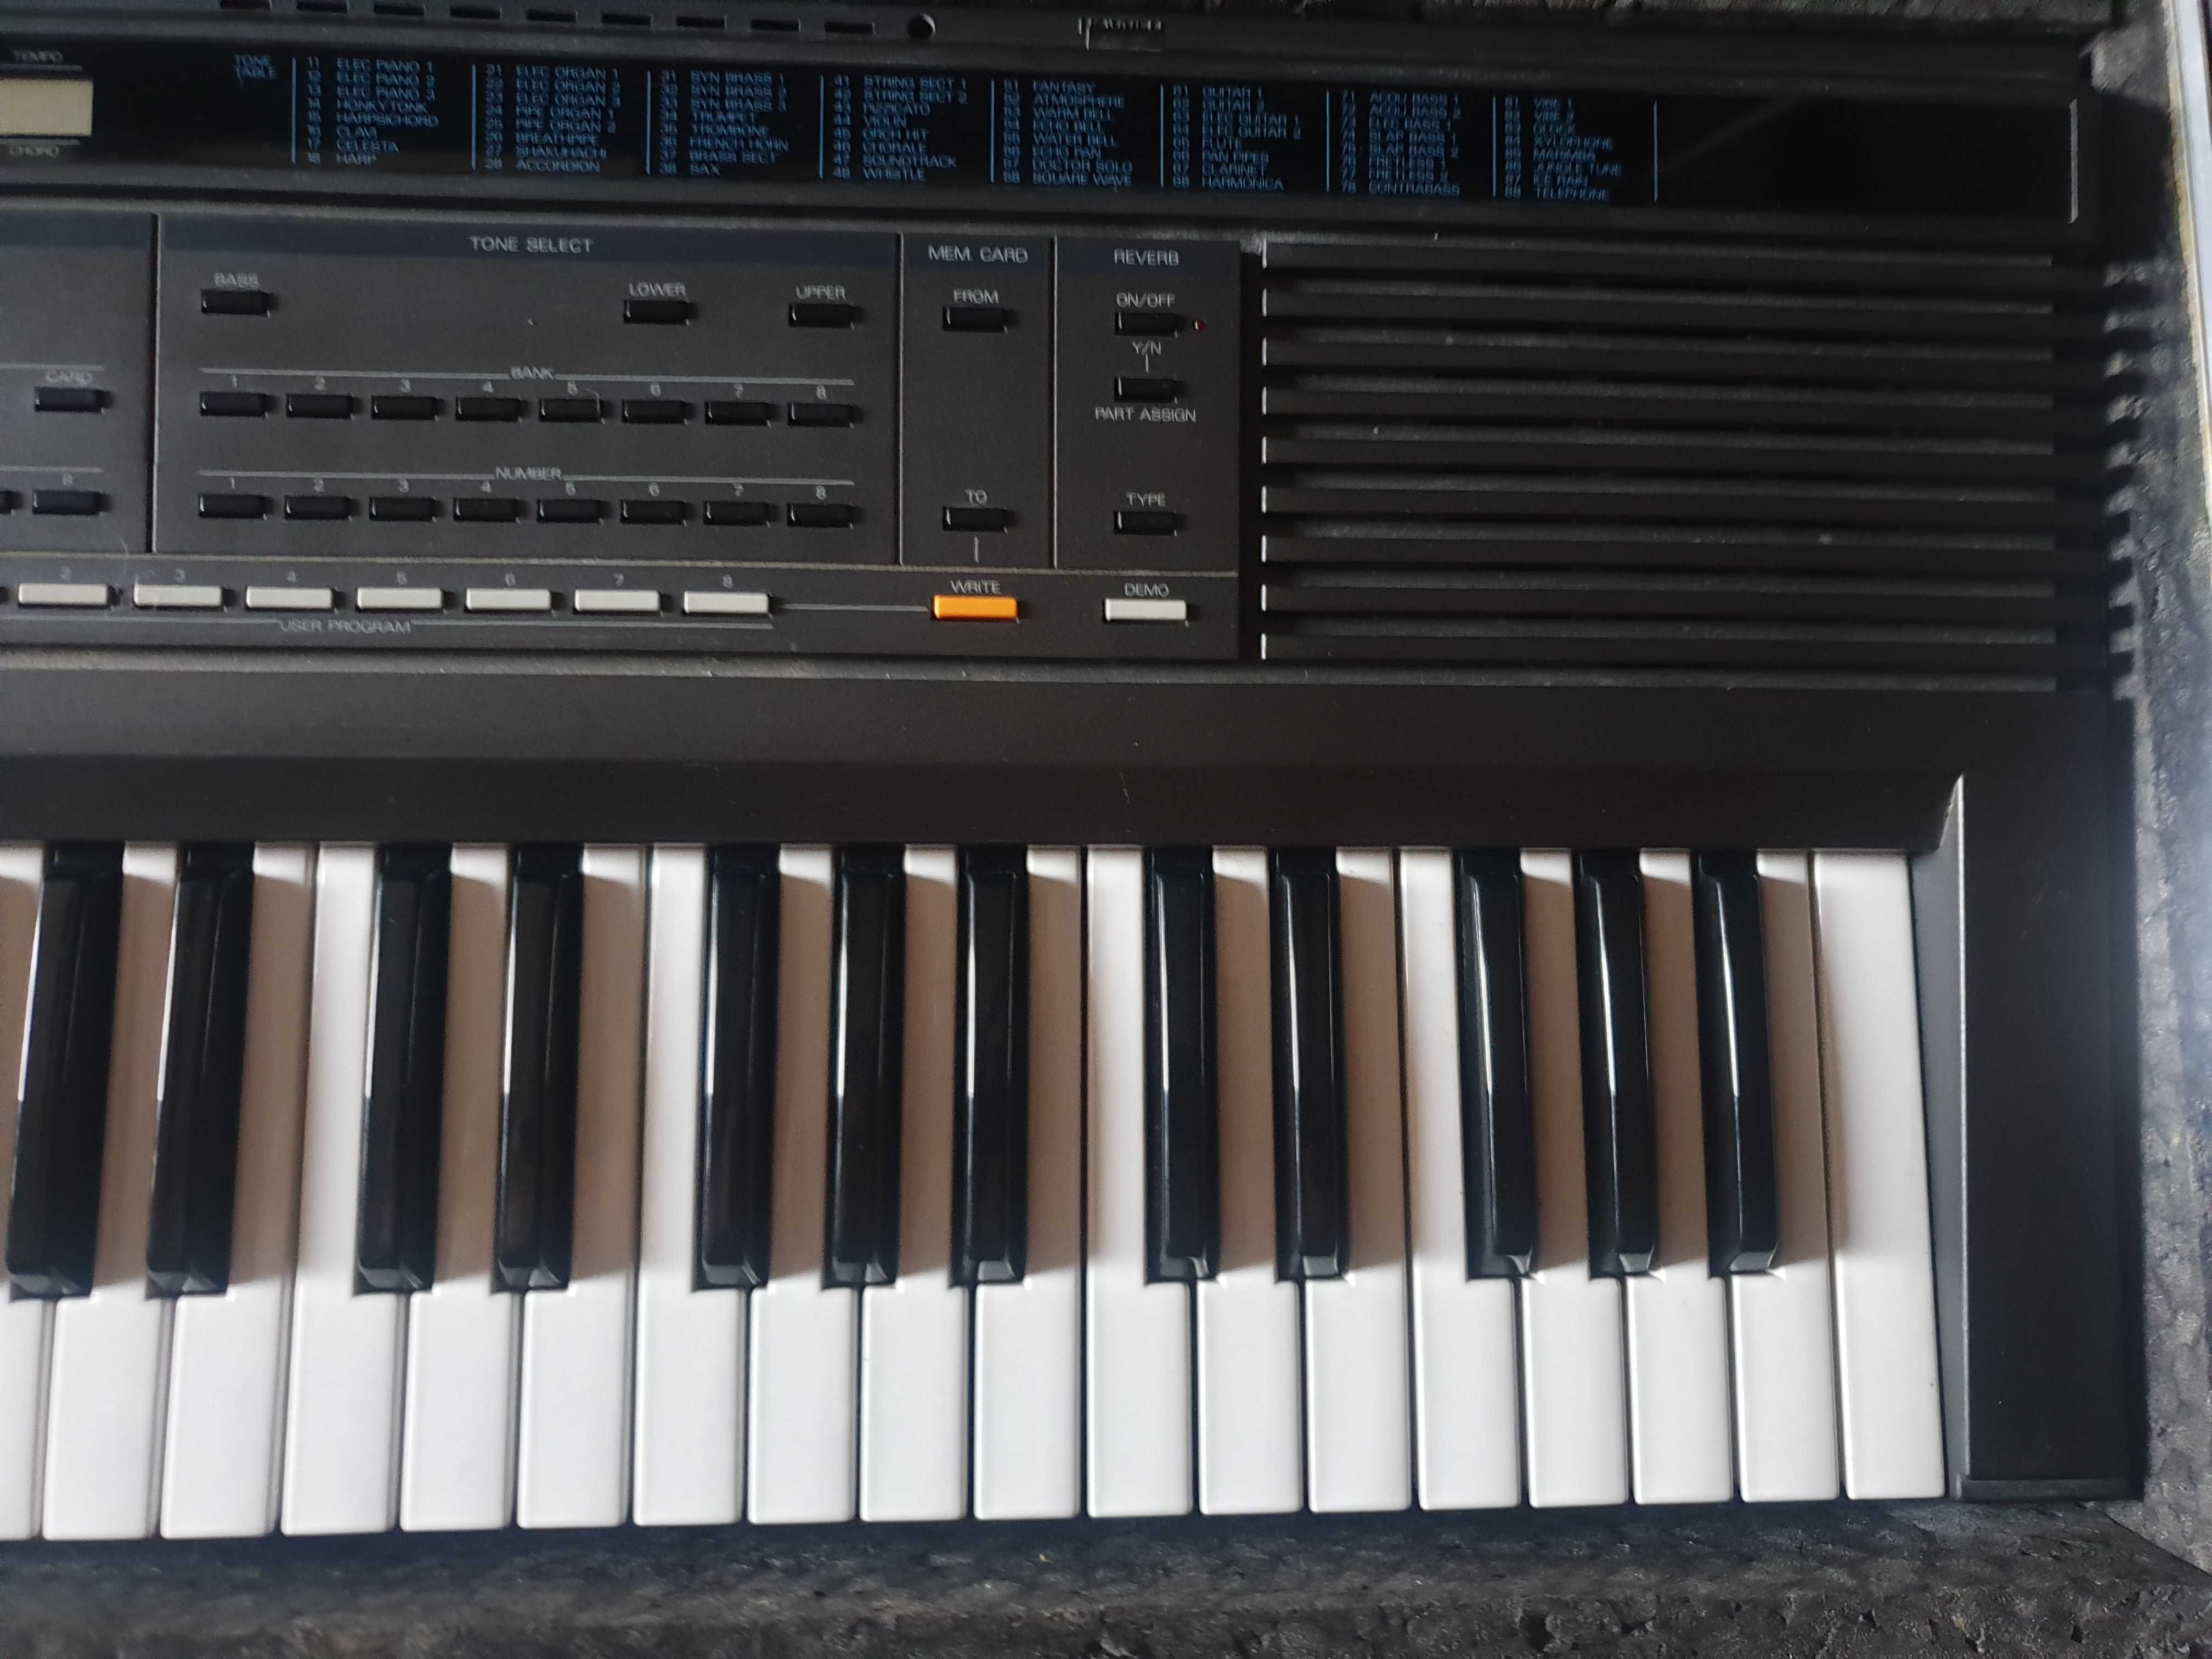 Roland E20 Syntezator  E-20 Organy Keyboard Opcja - Case